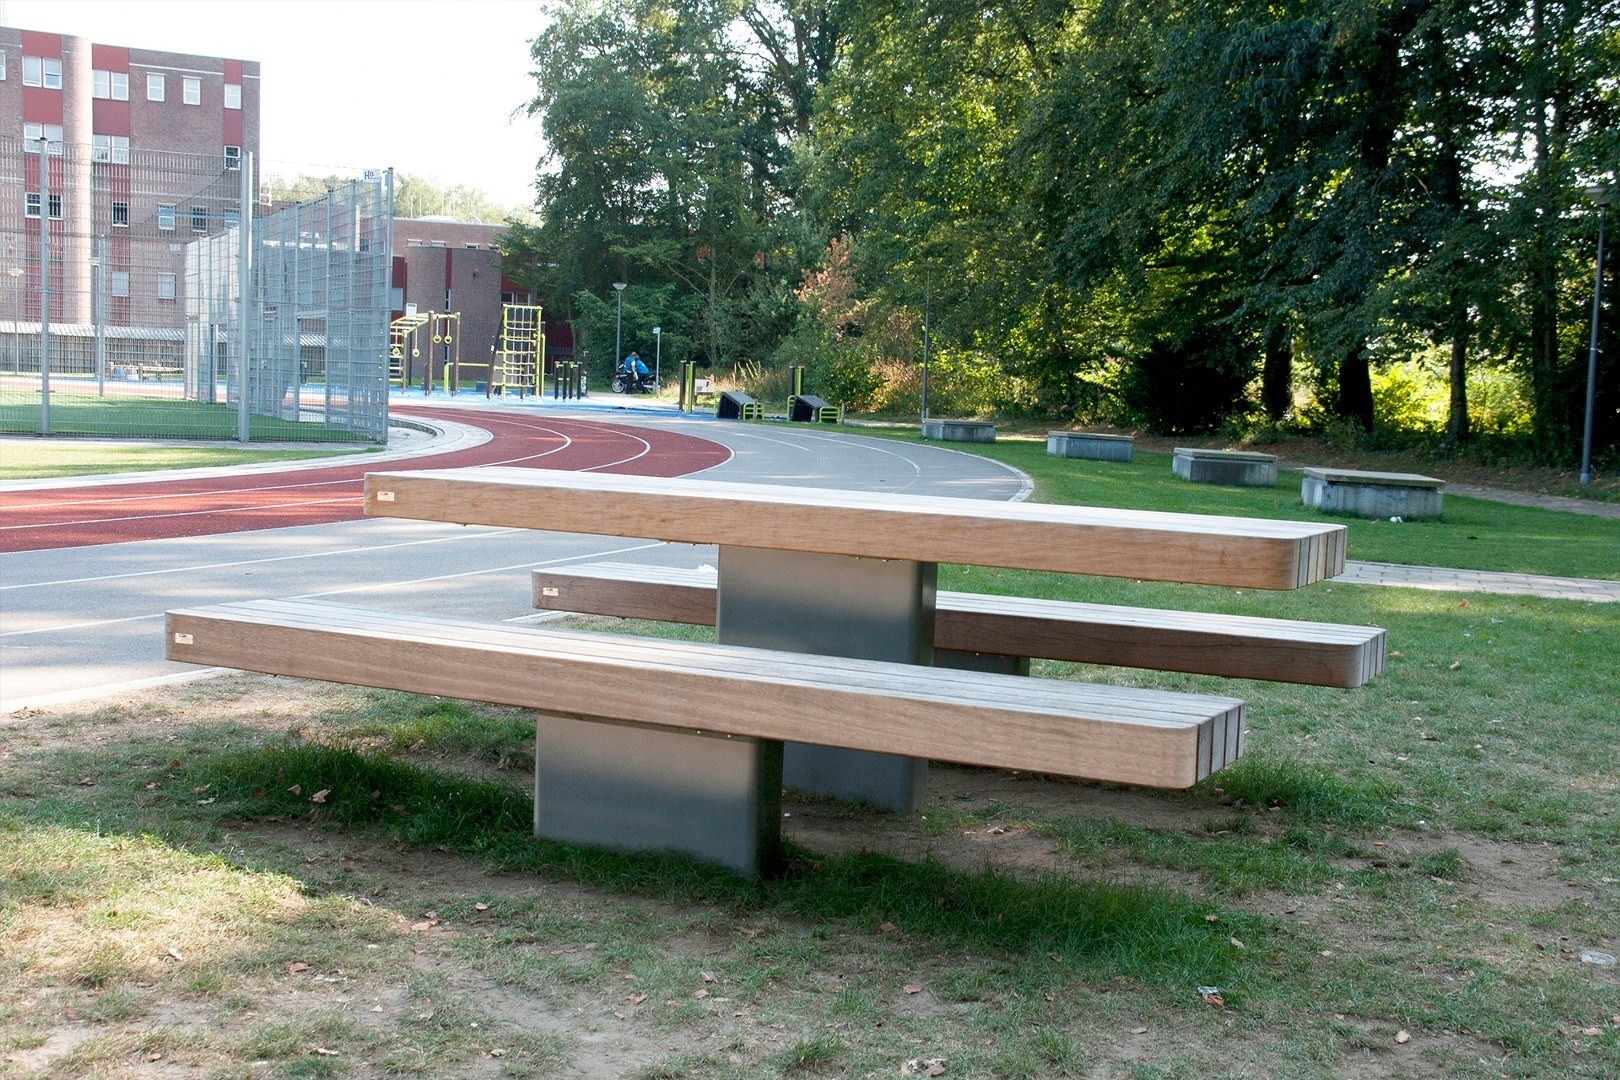 Espace public - Aménagement d'un parc sportif par Grijsen